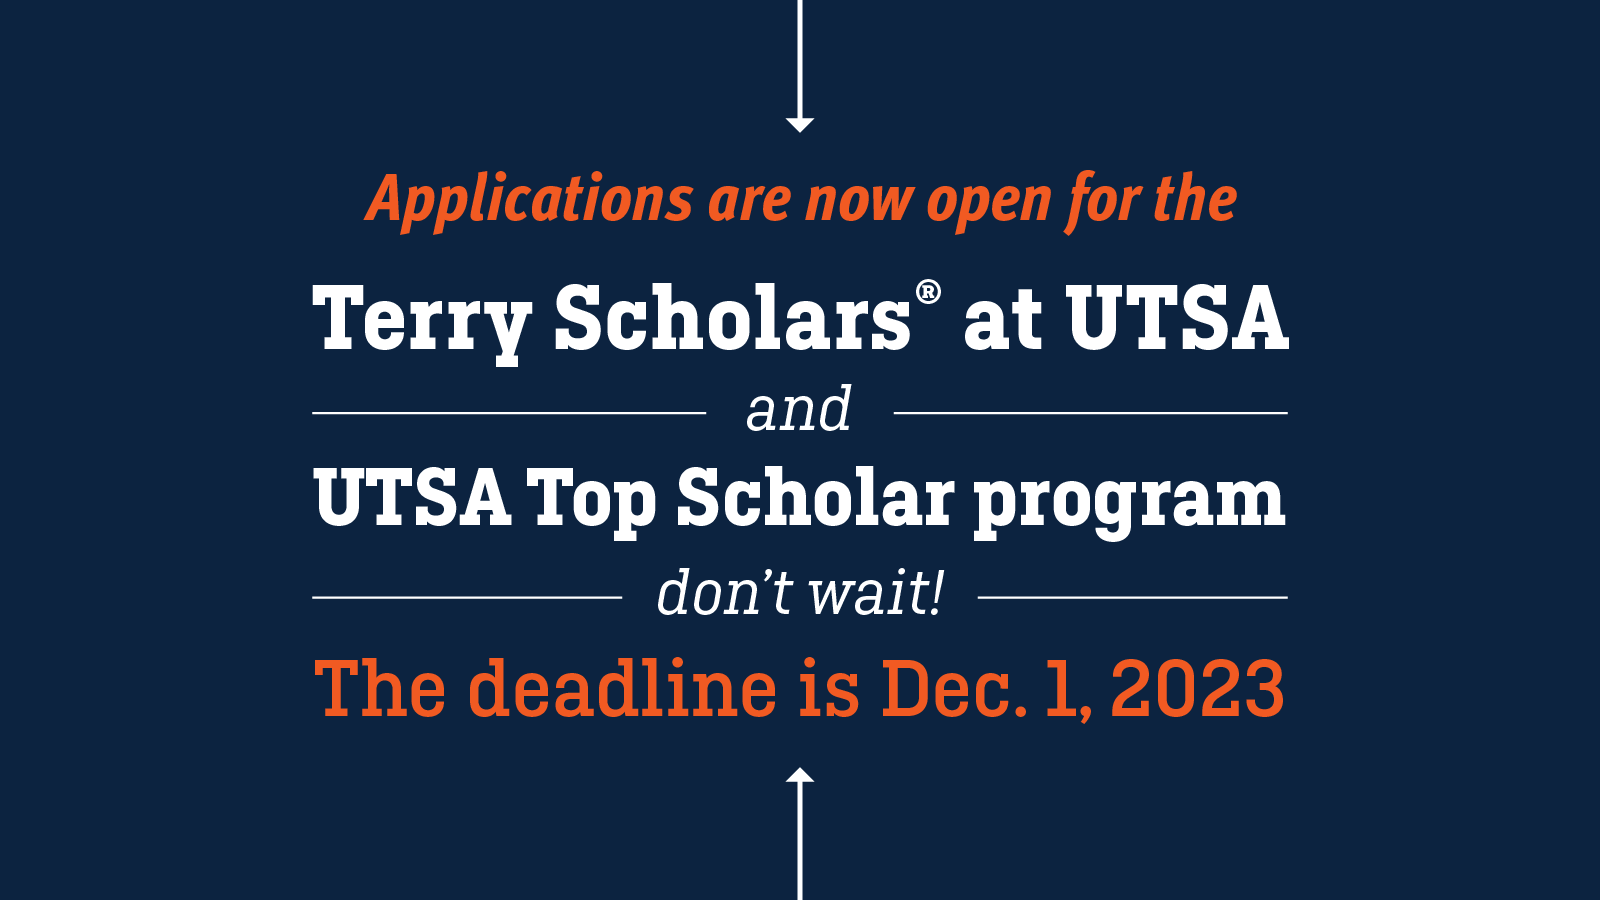 Terry Scholars and Top Scholars programs